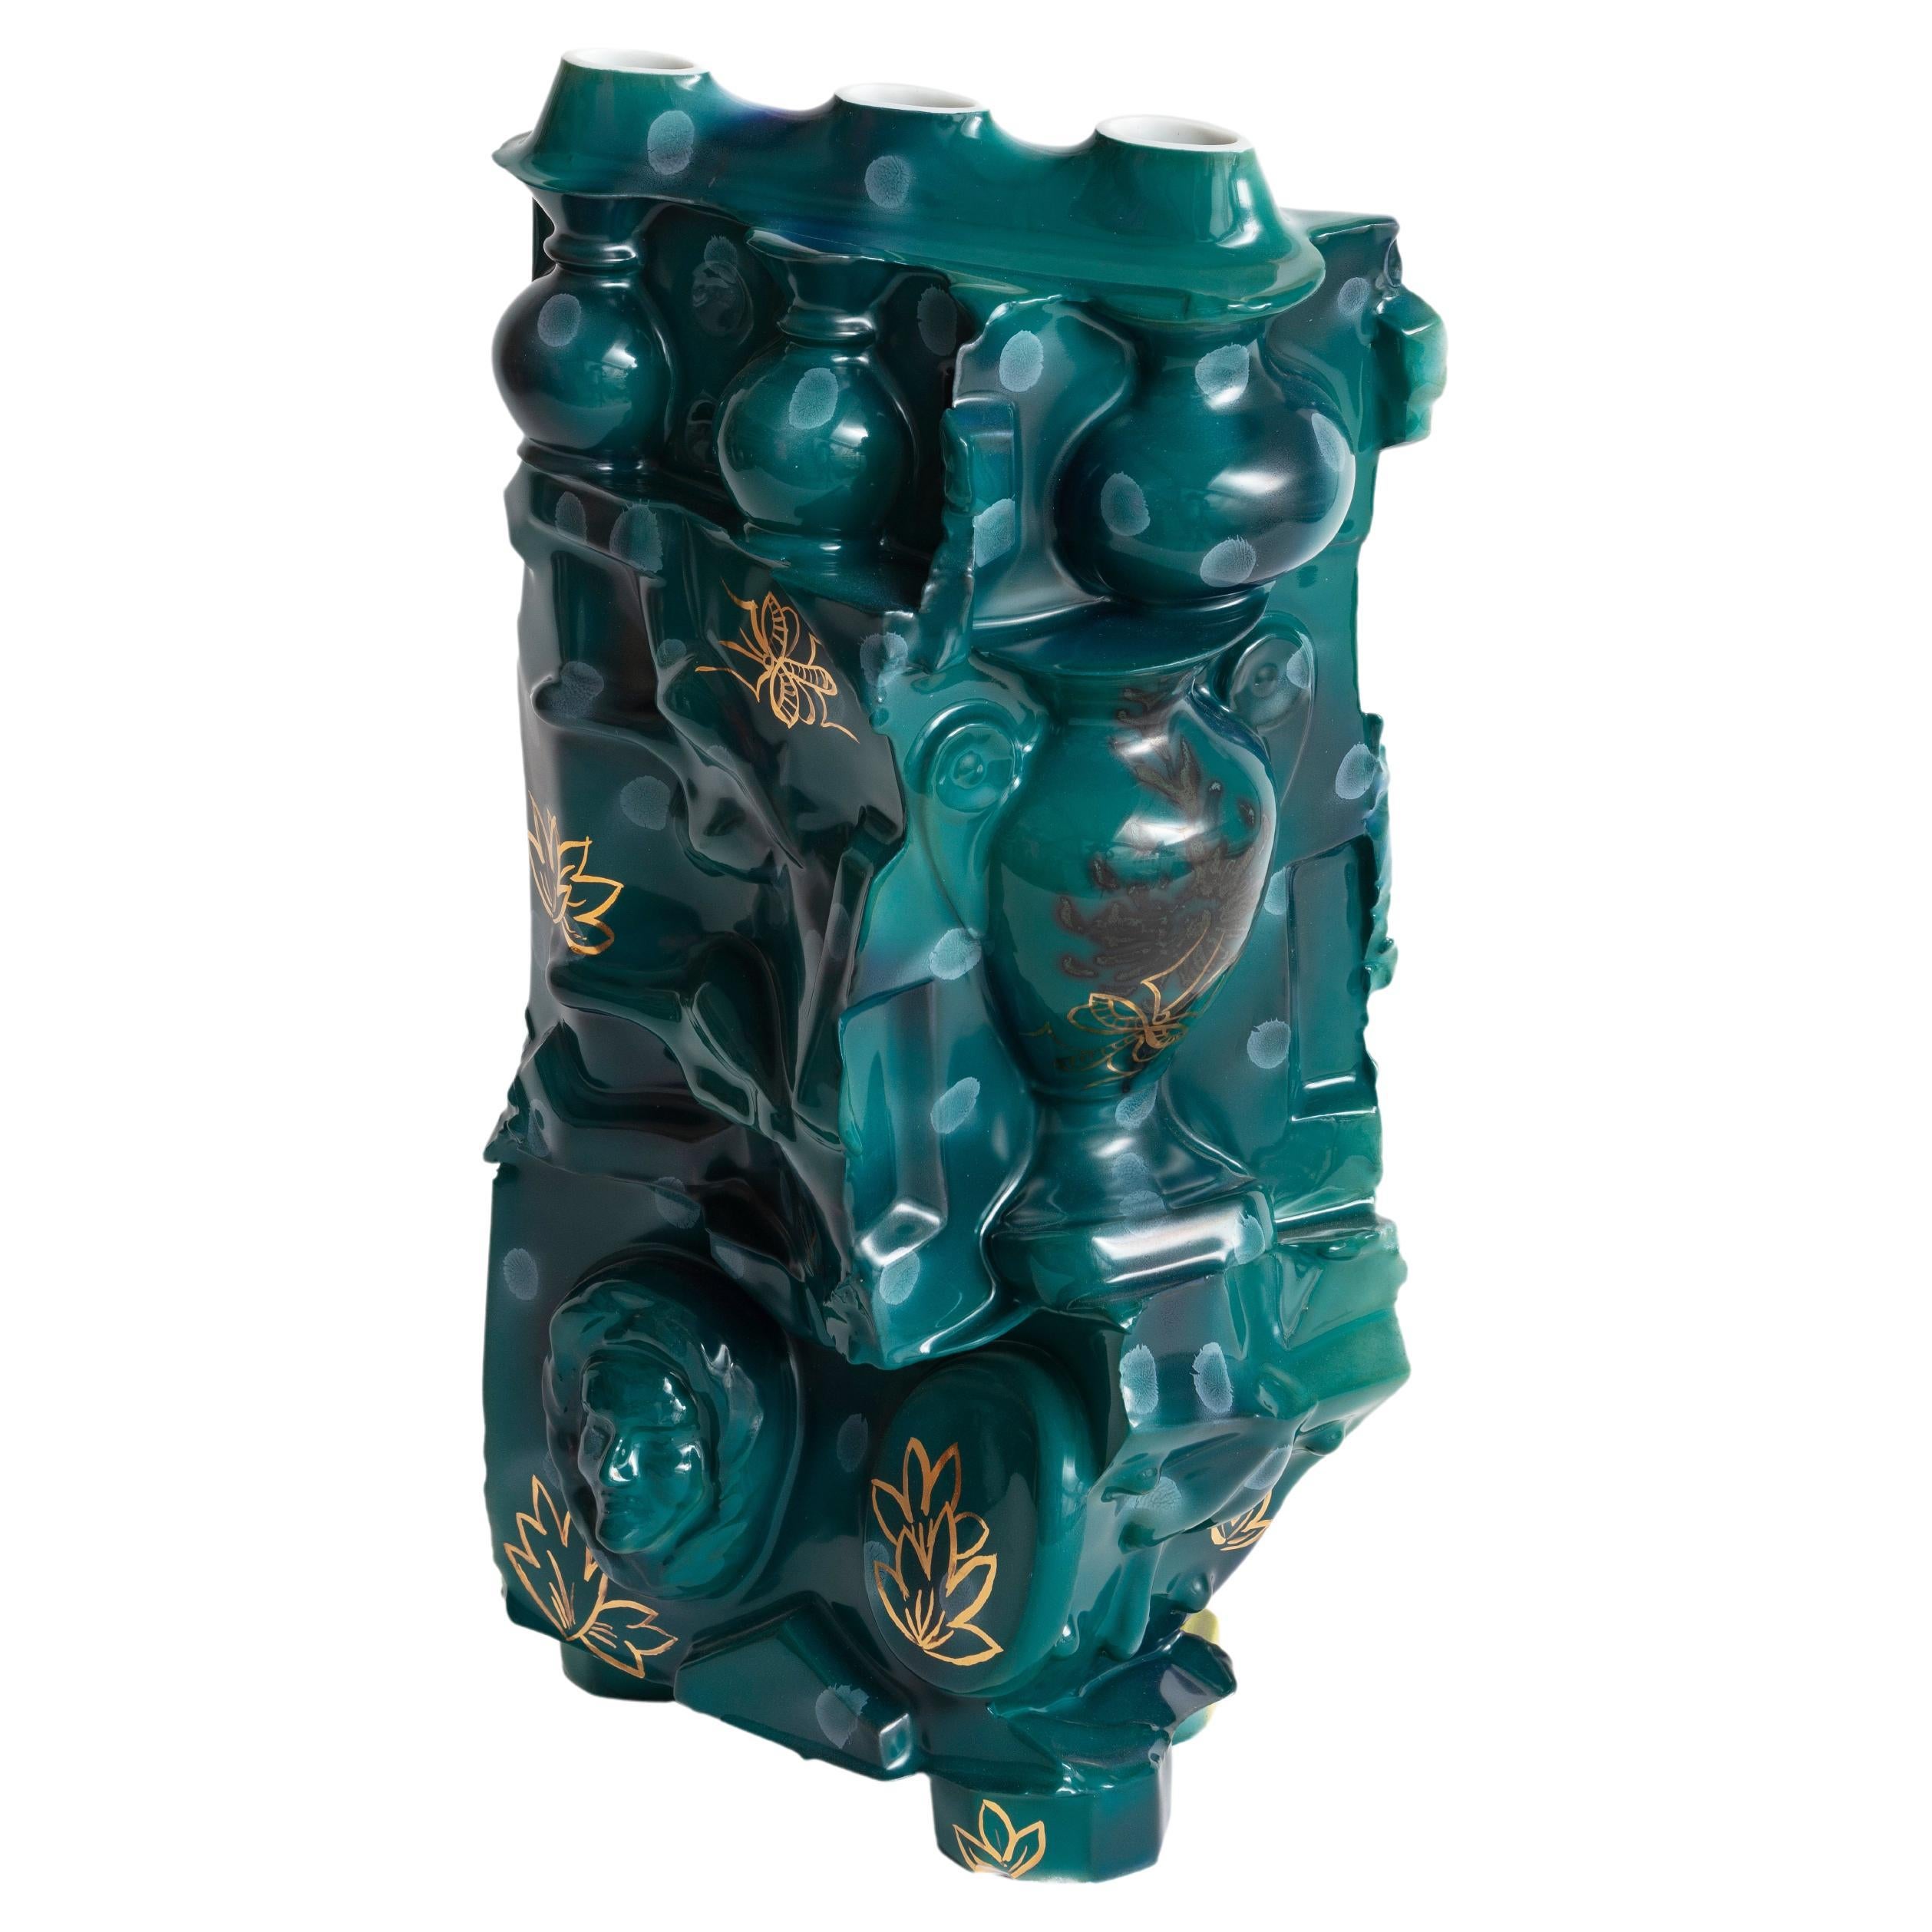 Dekorierte Vase „Joie sur la Colline“ aus emailliertem Porzellan, einzigartiges Stück